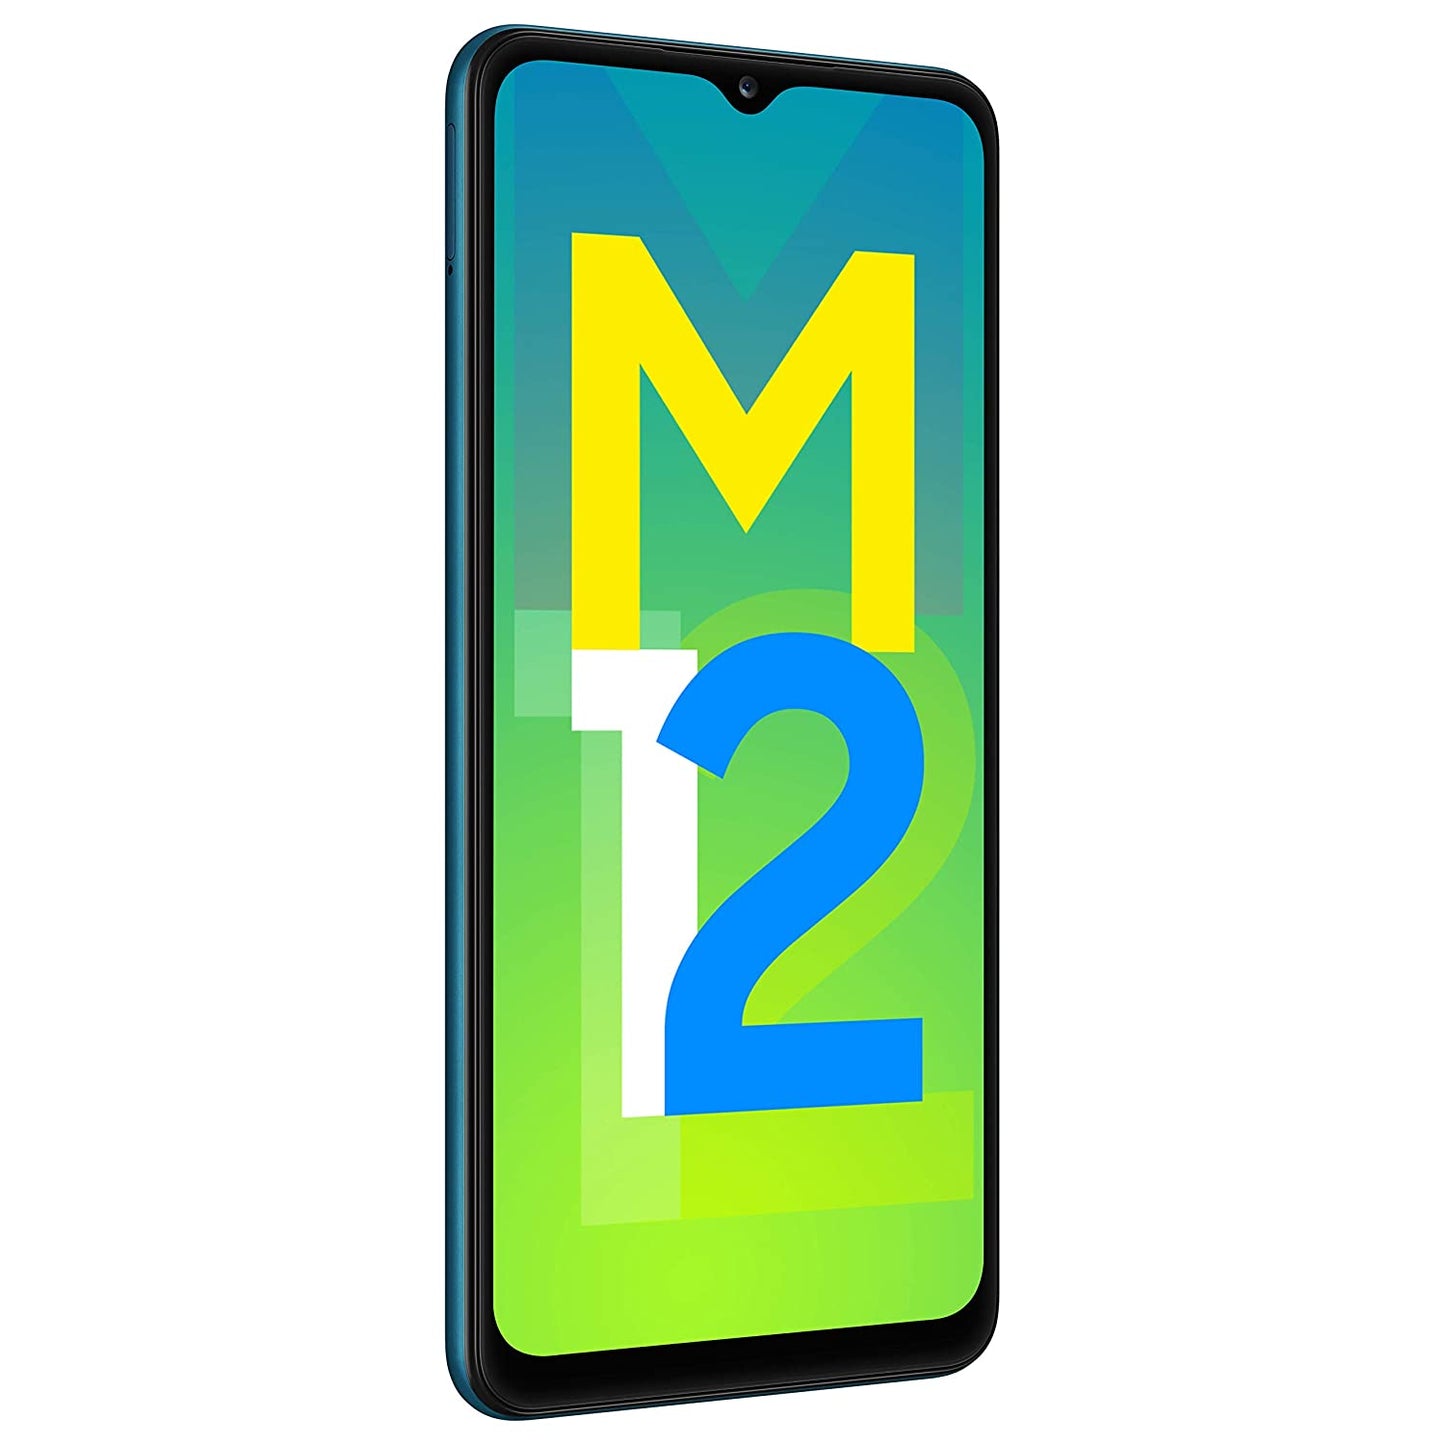 SAMSUNG Galaxy M12 (Blue, 128 GB)  (6 GB RAM)